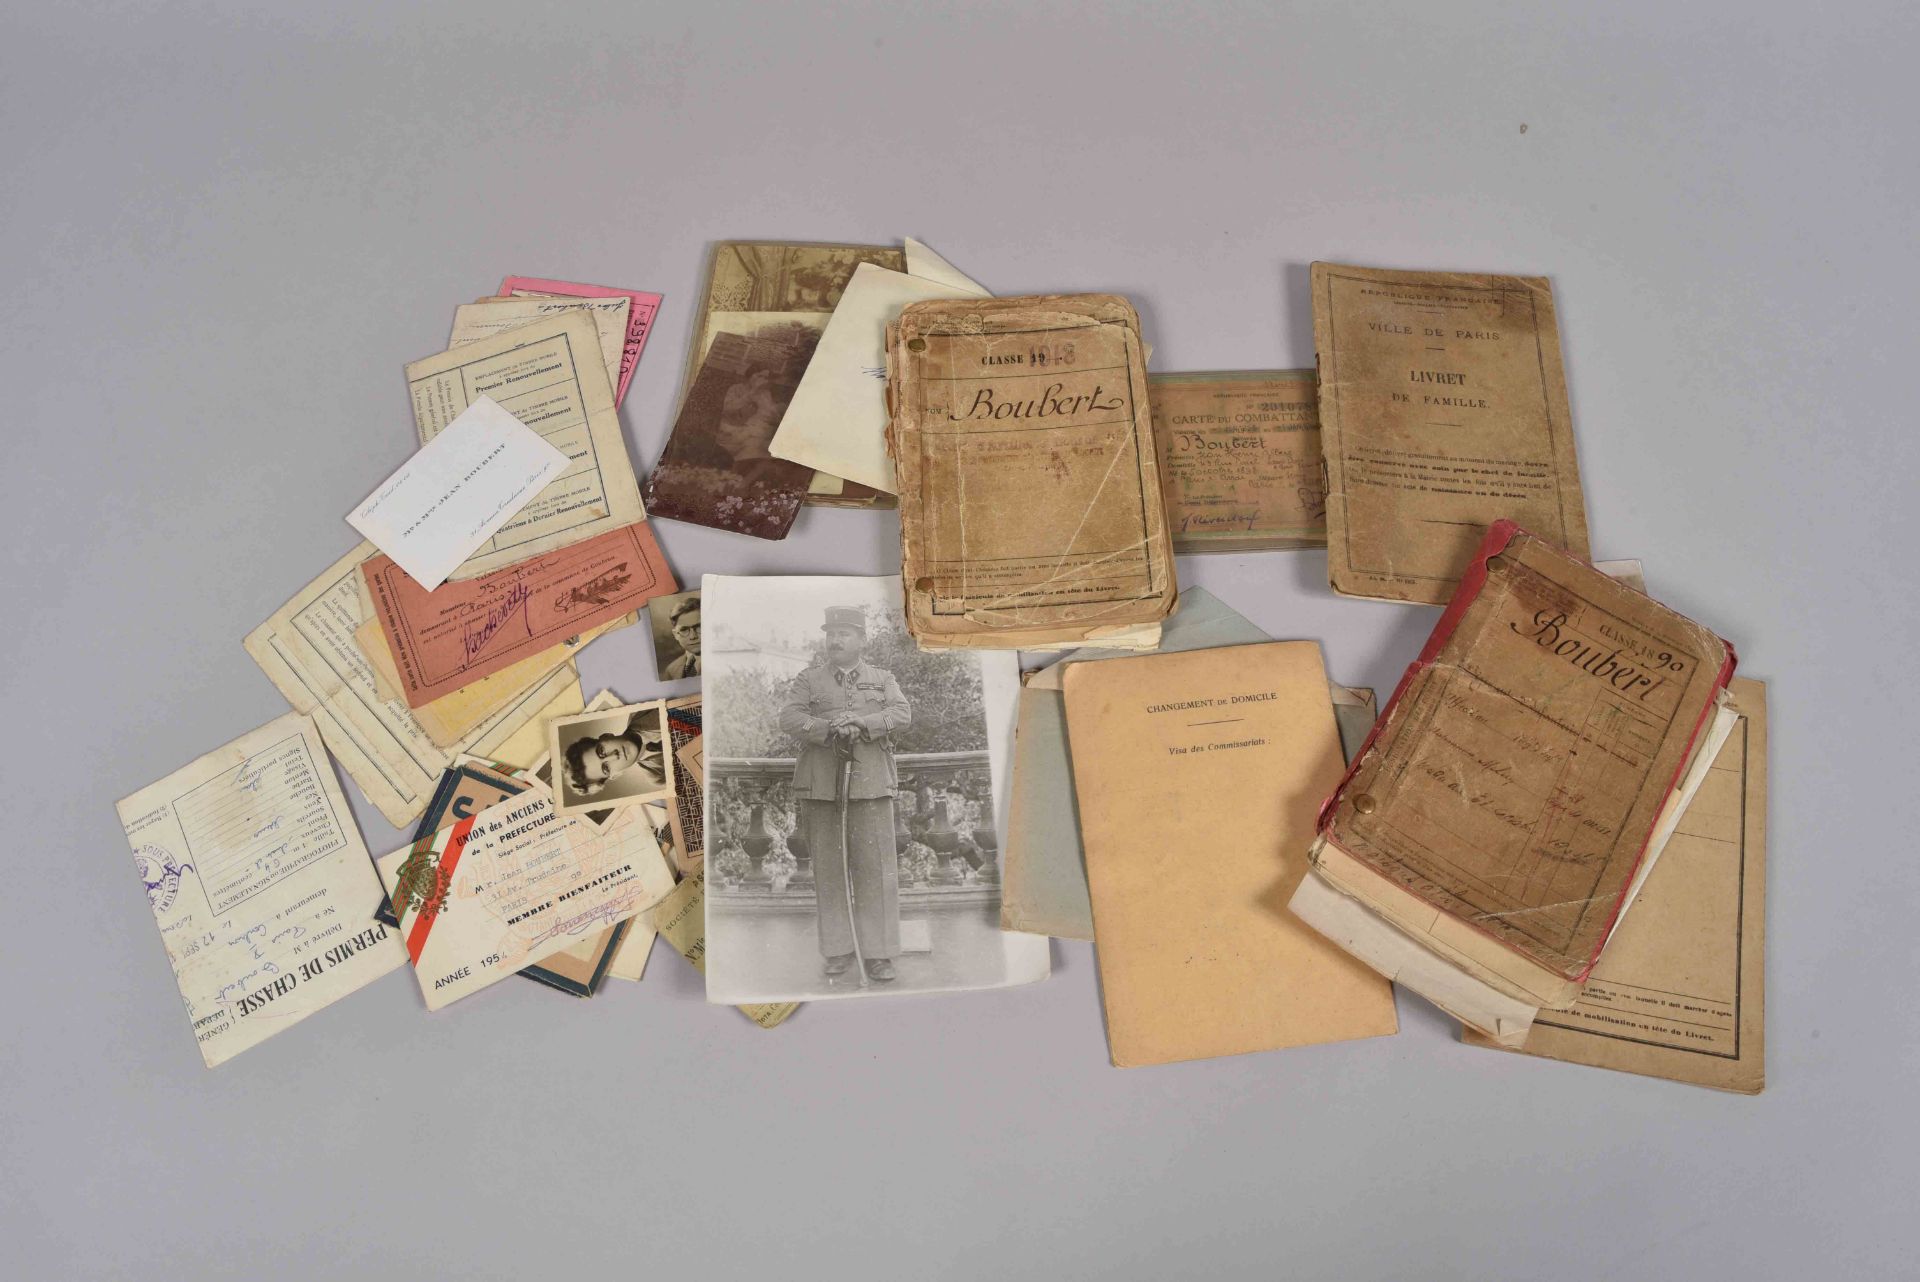 Lot documents et livrets militaires concernant la famille Boubert : pièces d’identité, permis de